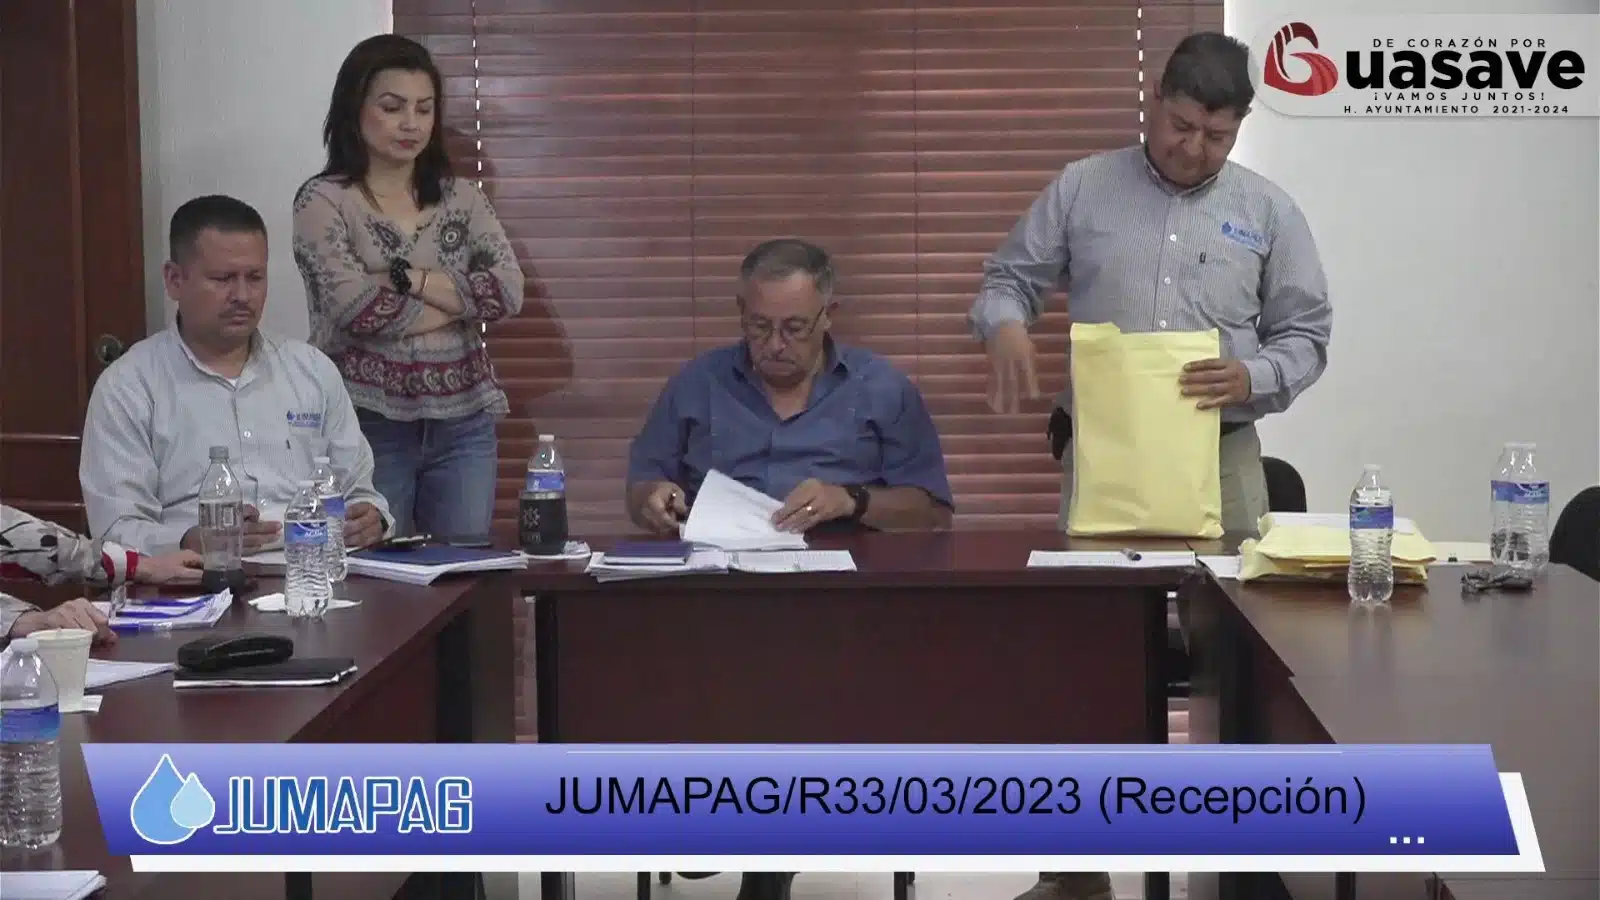 Personal de la Junta de Agua Potable de Guasave en su comunicado oficial de licitación de obras